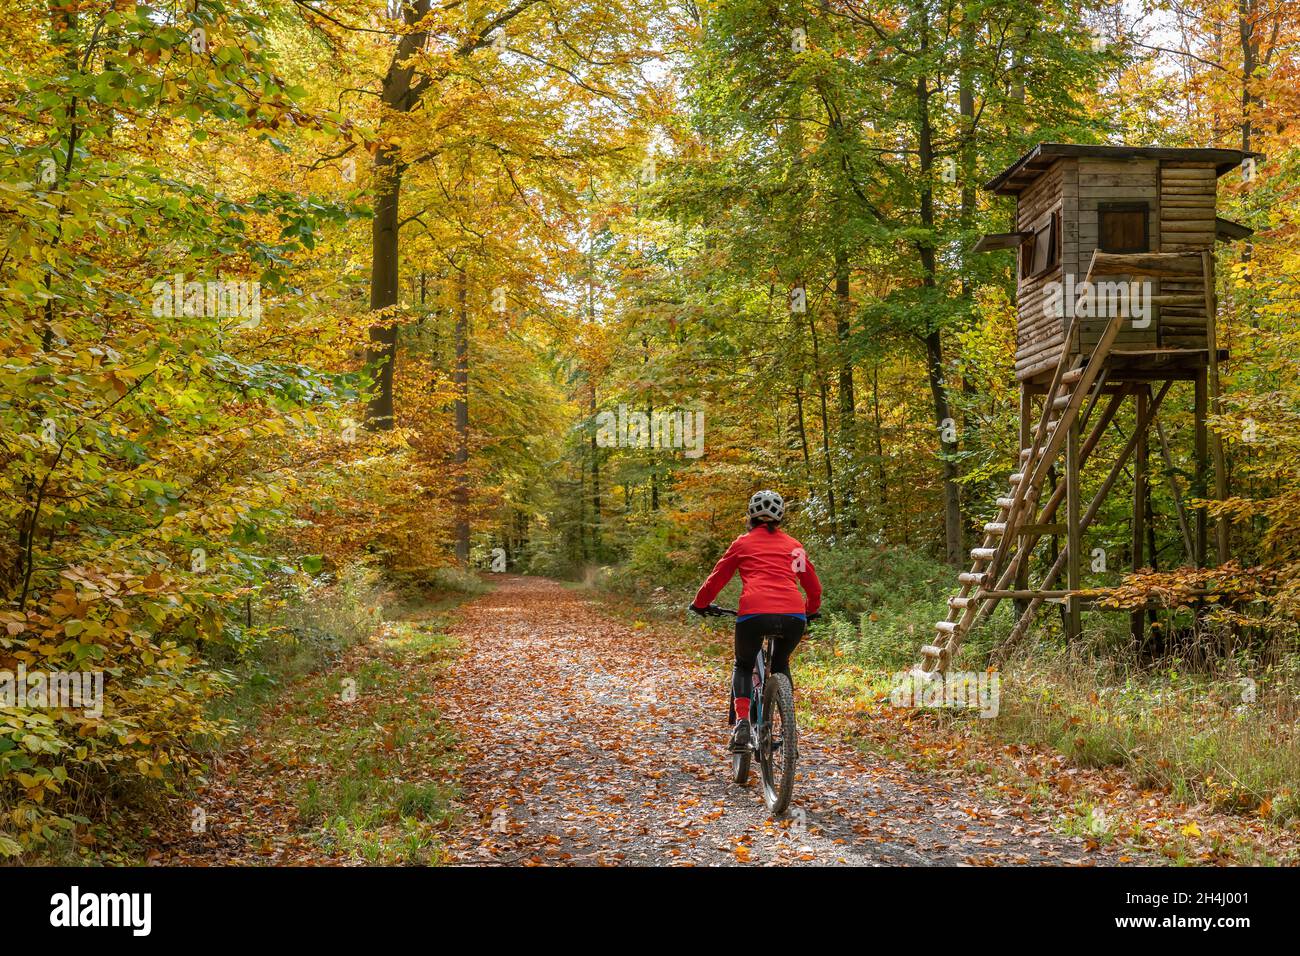 bonita mujer mayor ridin su bicicleta eléctrica en un colorido bosque de otoño con follaje dorado Foto de stock